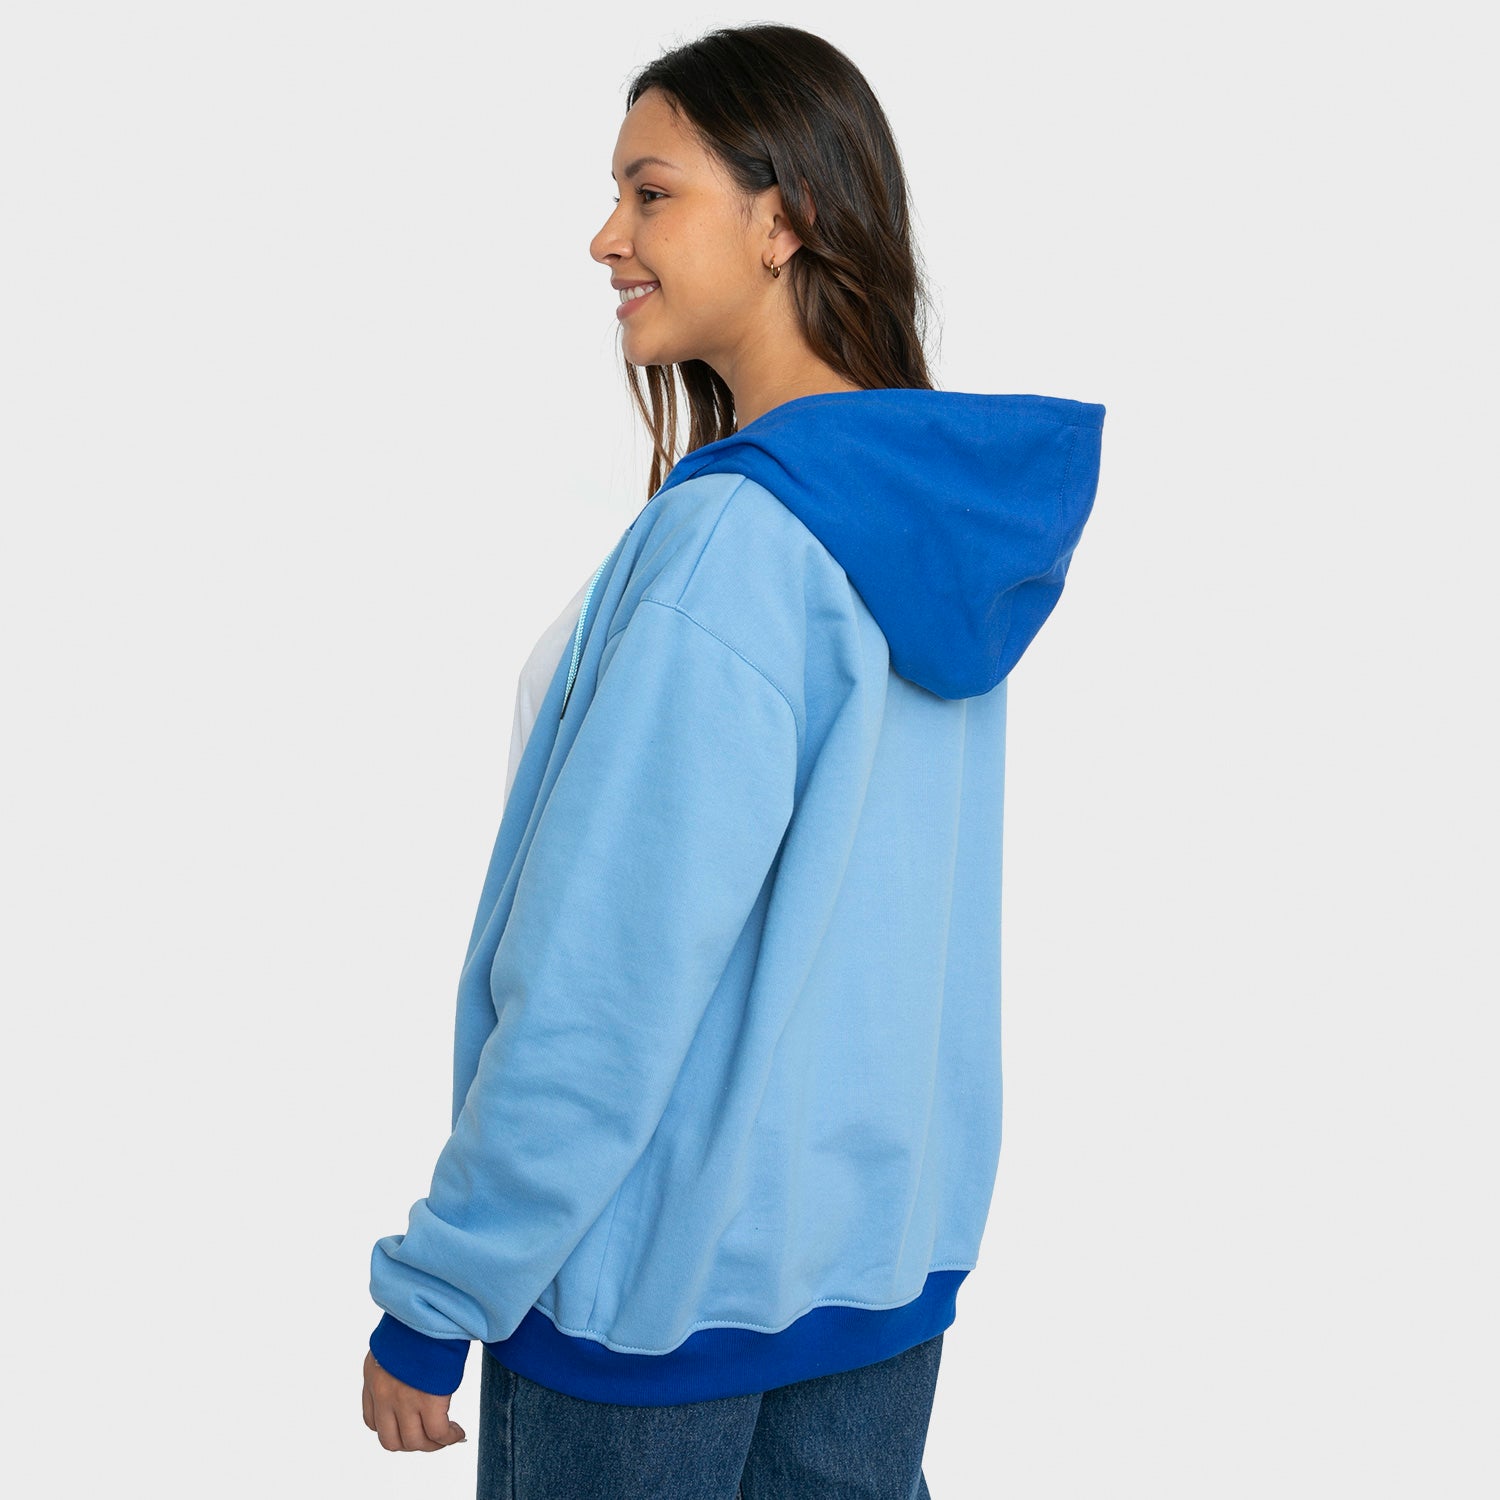 Polerón Blue Spring Sweatshirt